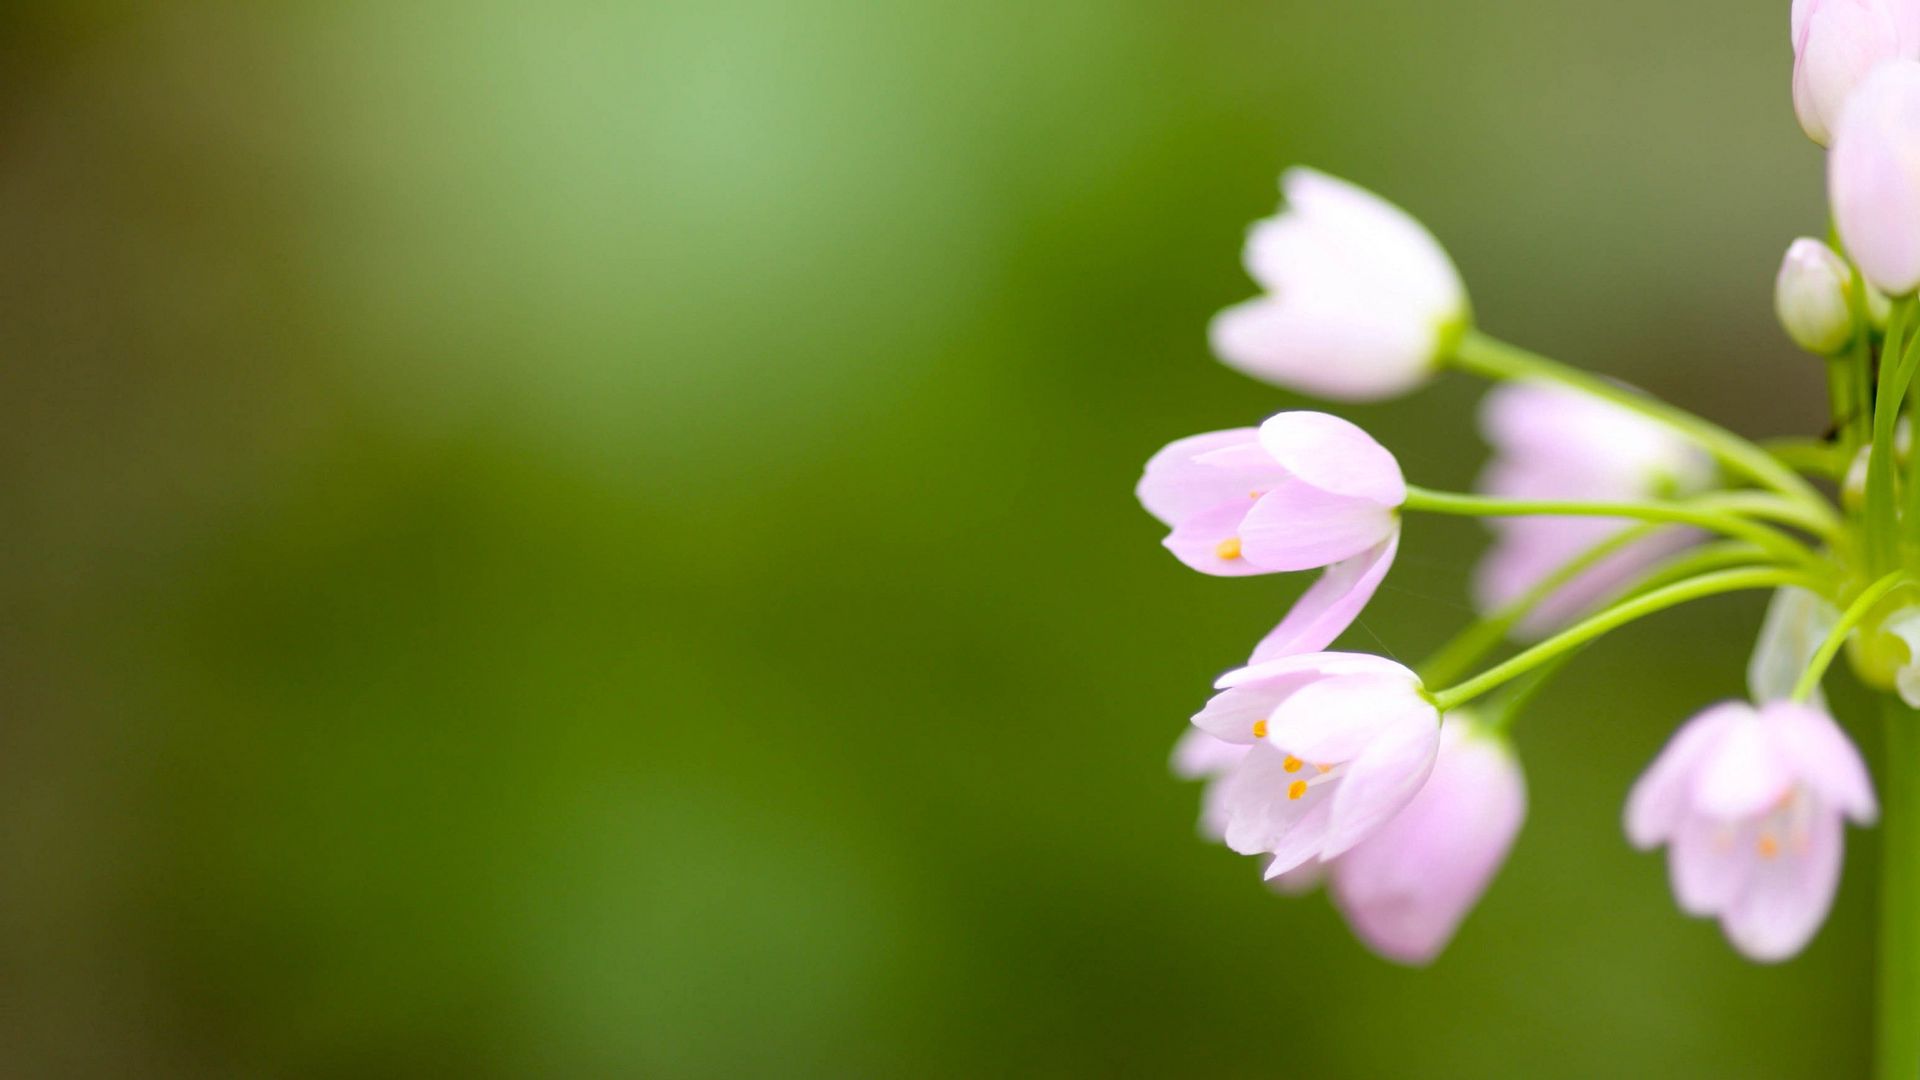 Hoa - Gợi cảm hứng tự nhiên và làm cho lòng người thêm vui vẻ, hãy chiêm ngưỡng vẻ đẹp của hoa trong hình ảnh này. 